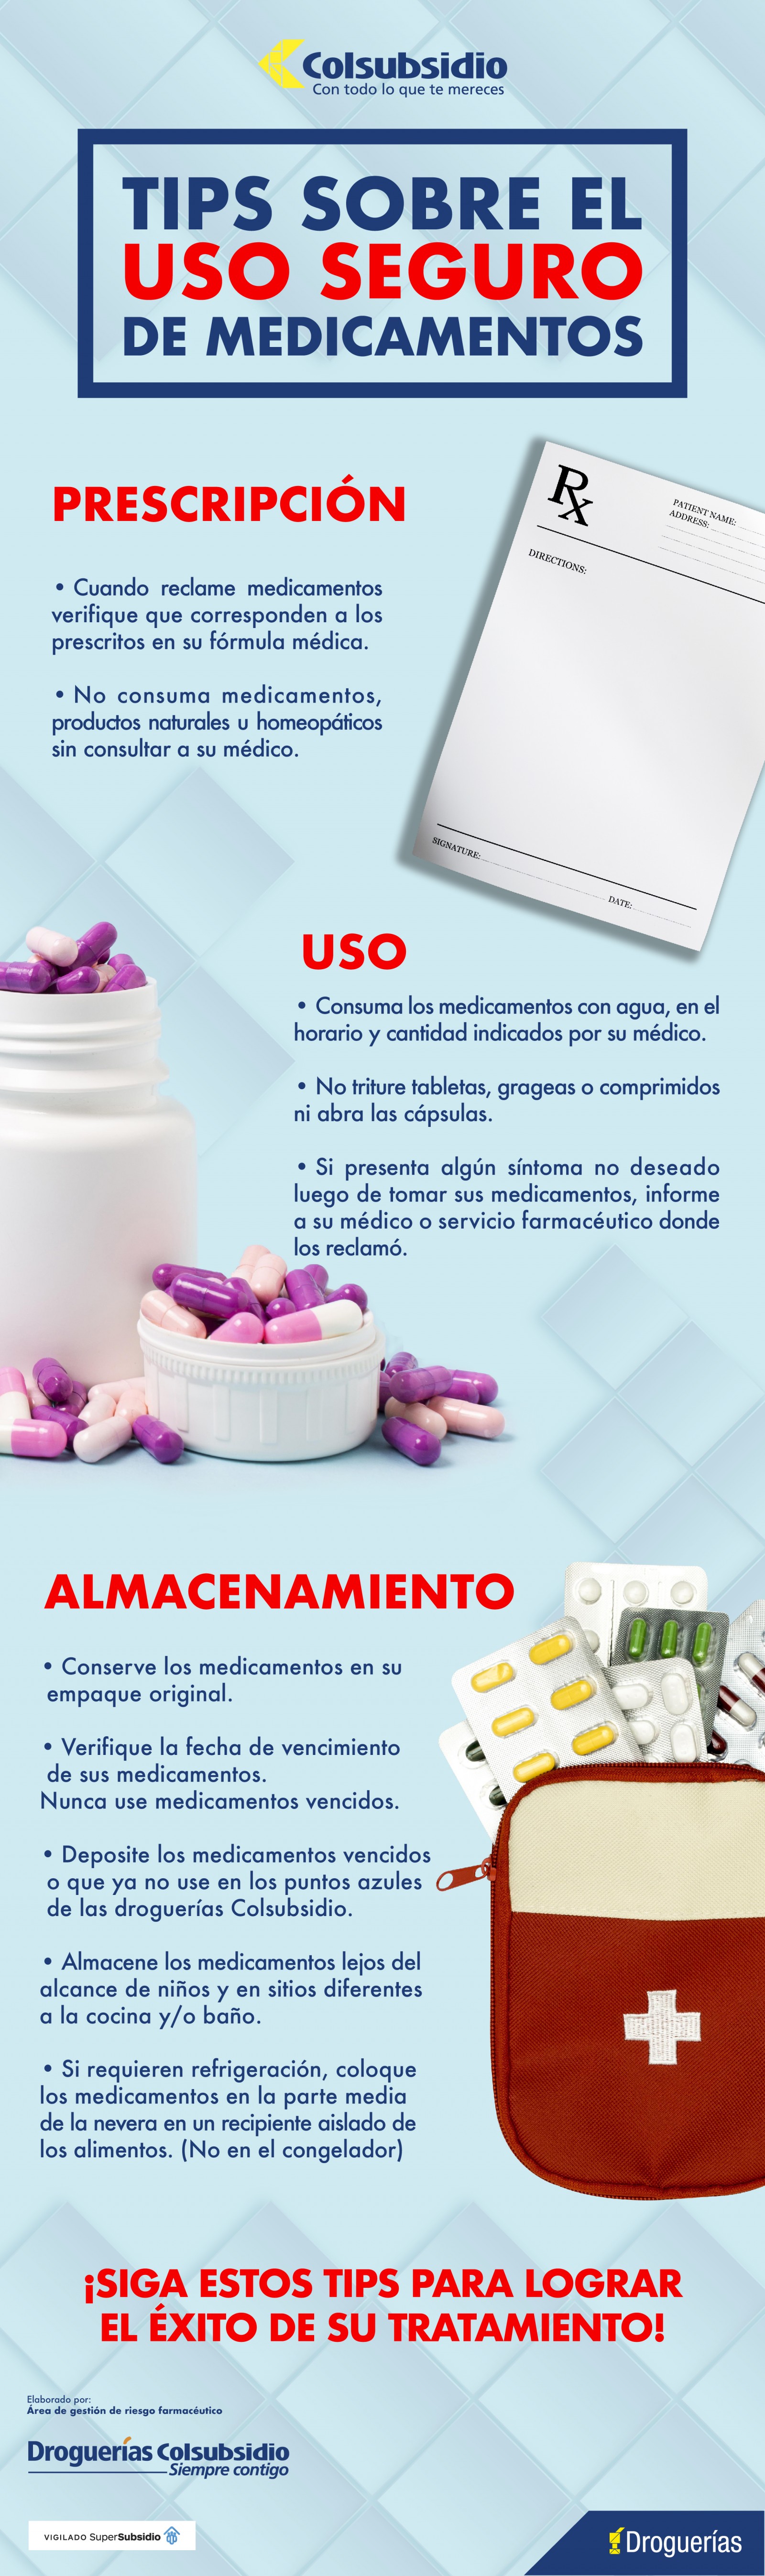 Infografía sobre tips del uso seguro de medicamentos.